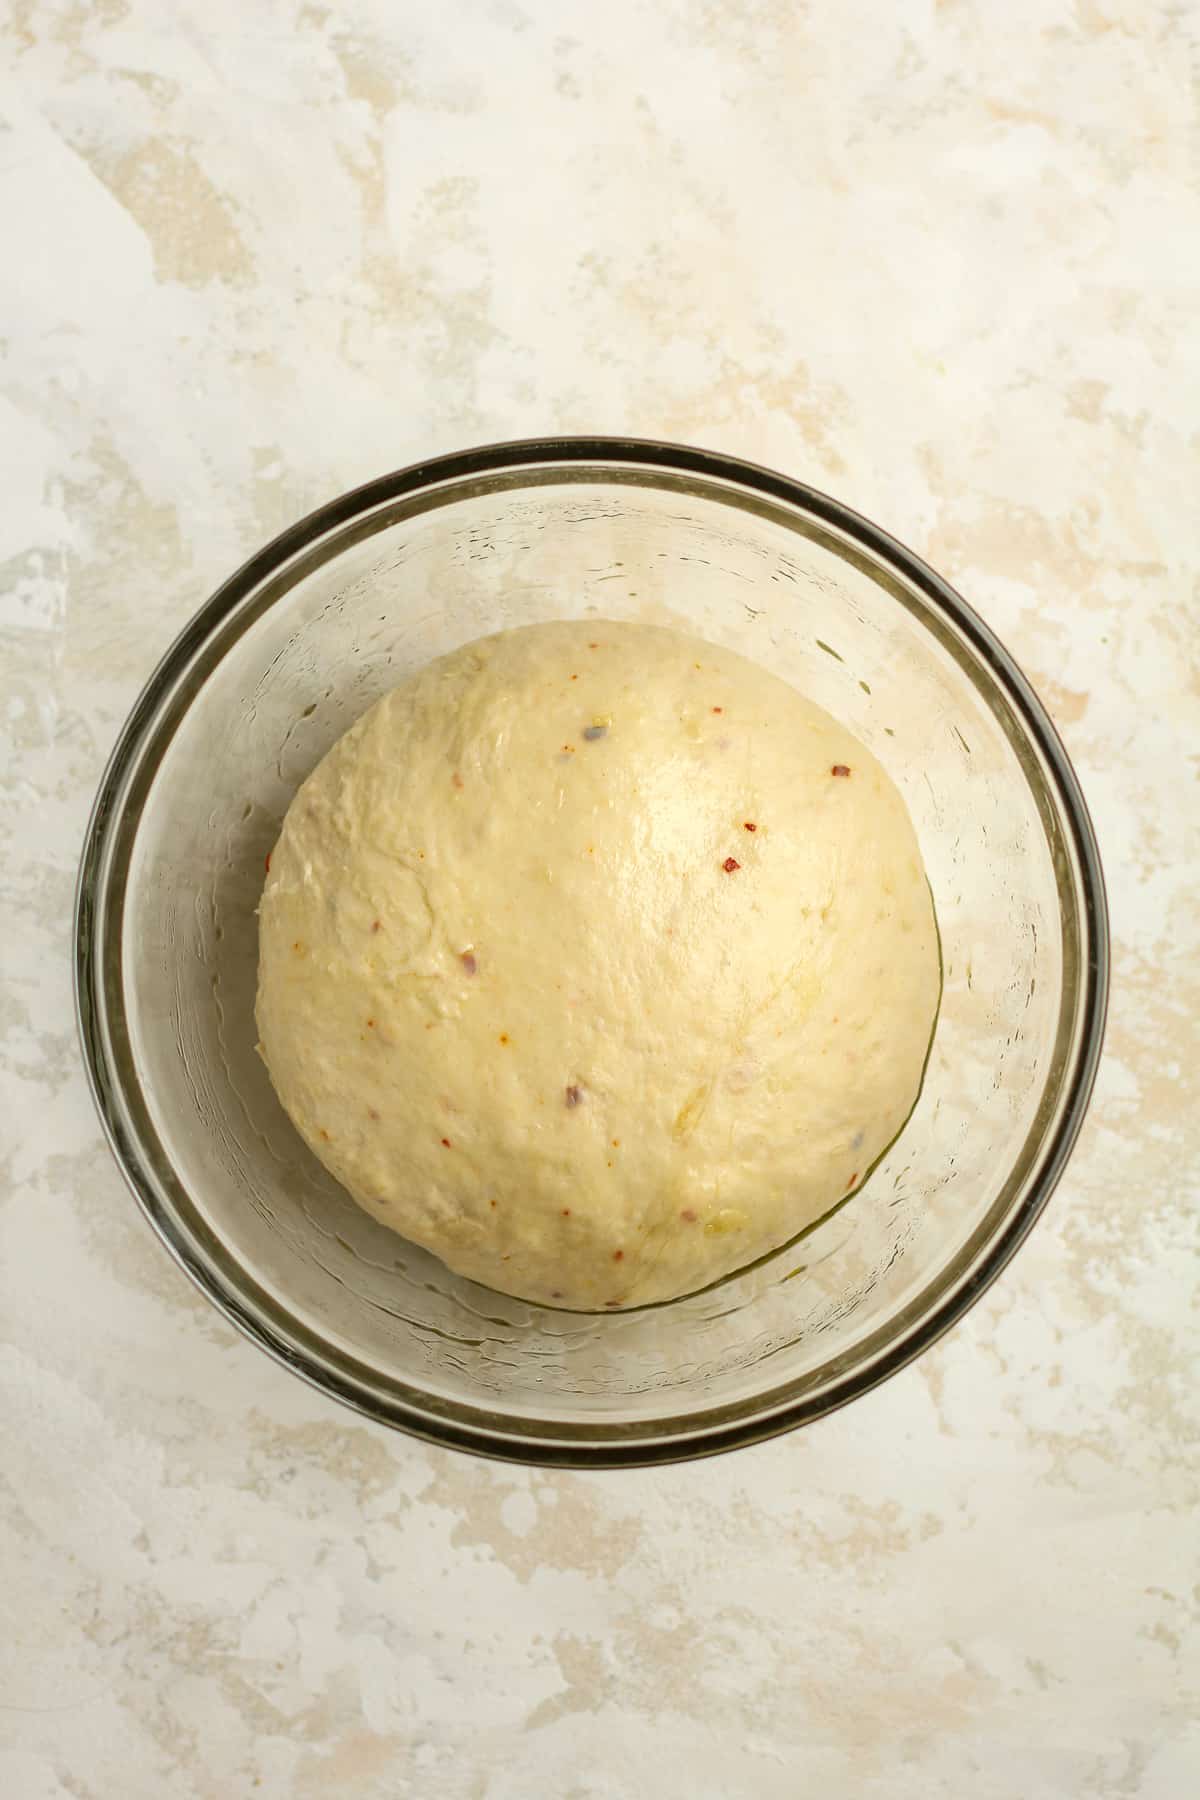 A bowl of the parmesan flatbread dough.